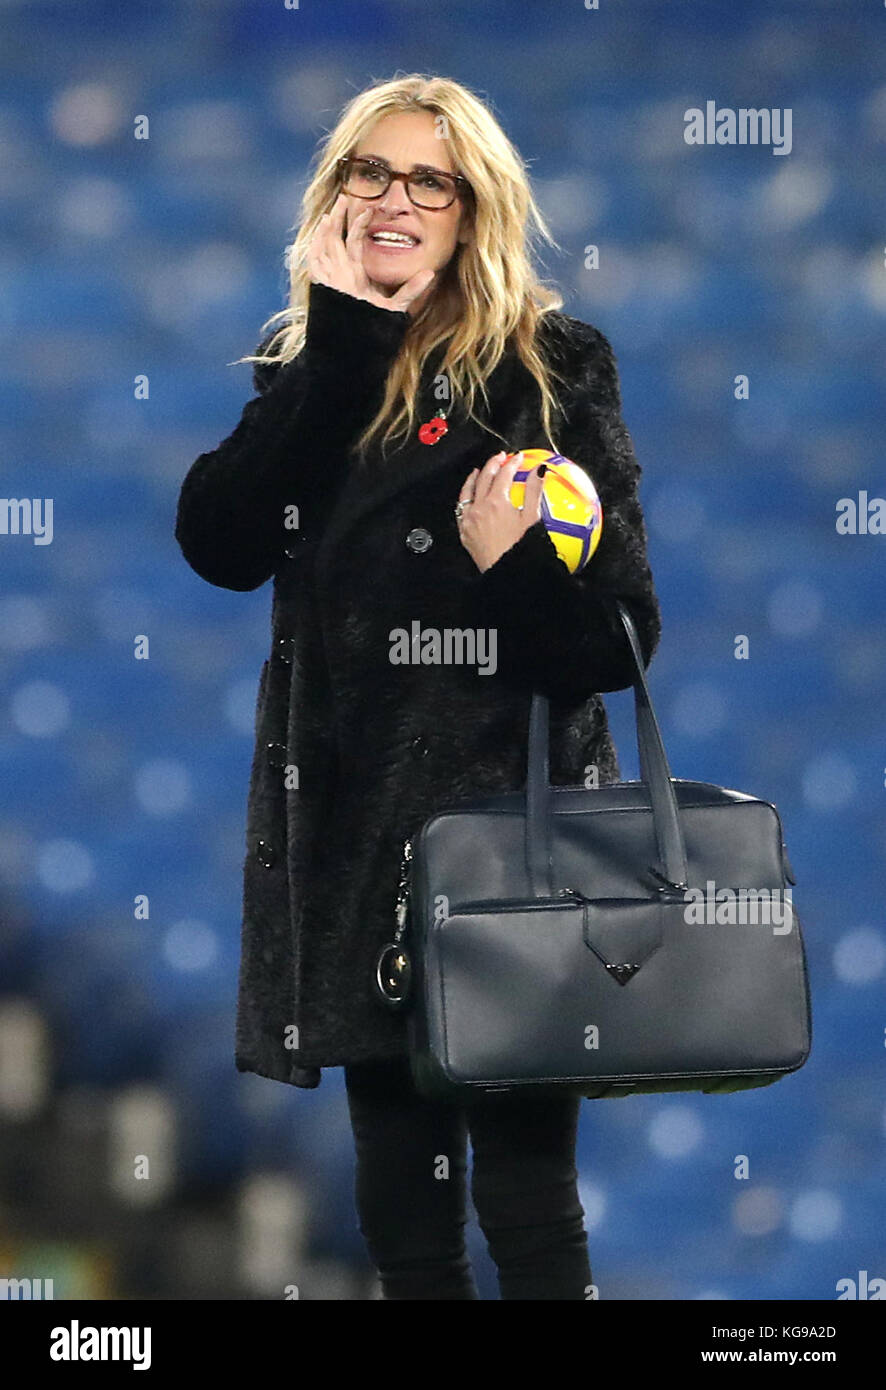 L'attrice americana Julia Roberts sul campo dopo la partita della Premier League a Stamford Bridge, Londra. Foto Stock